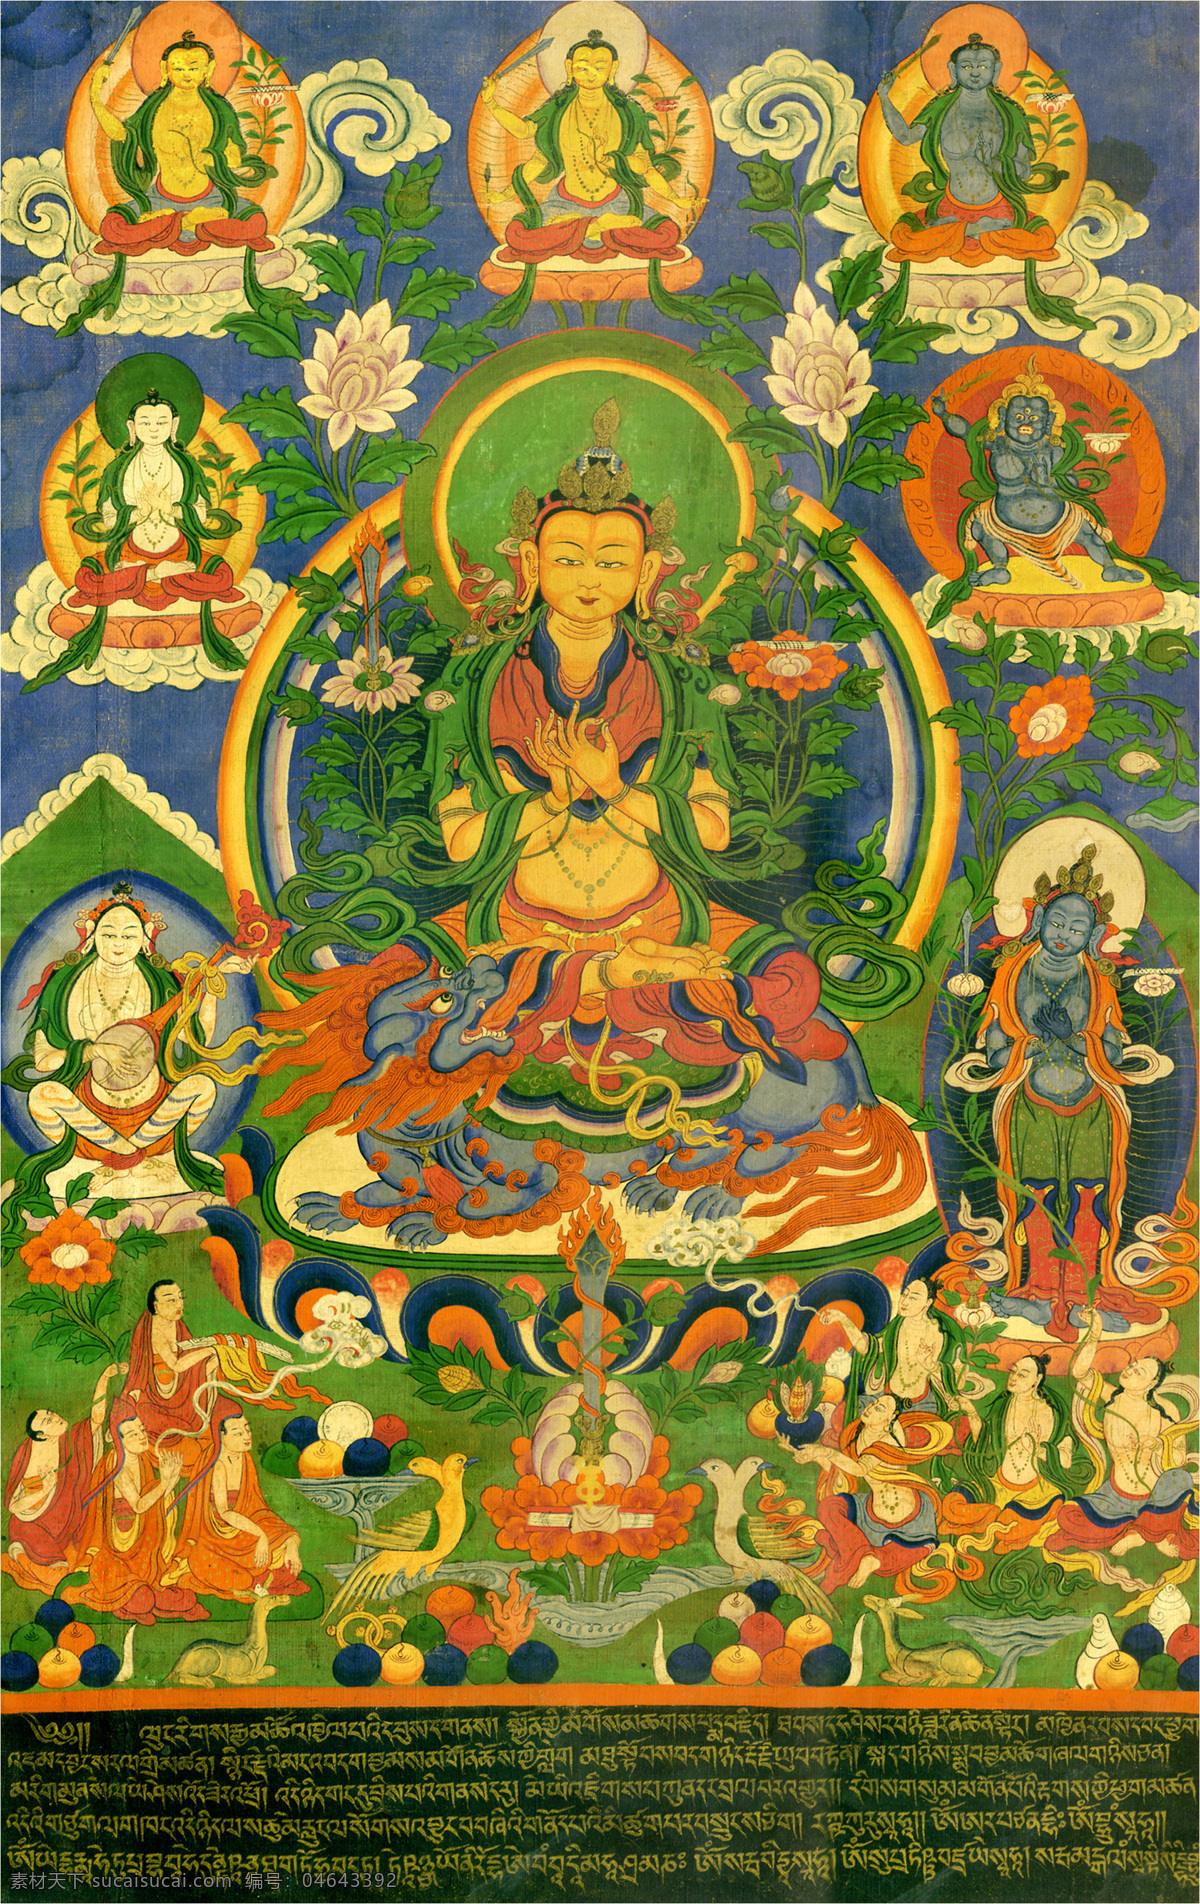 唐卡 佛教 藏传佛教 佛 宗教 宗教信仰 菩萨 西藏 民族 工艺 花纹 藏文 绘画 艺术 绘画书法 文化艺术